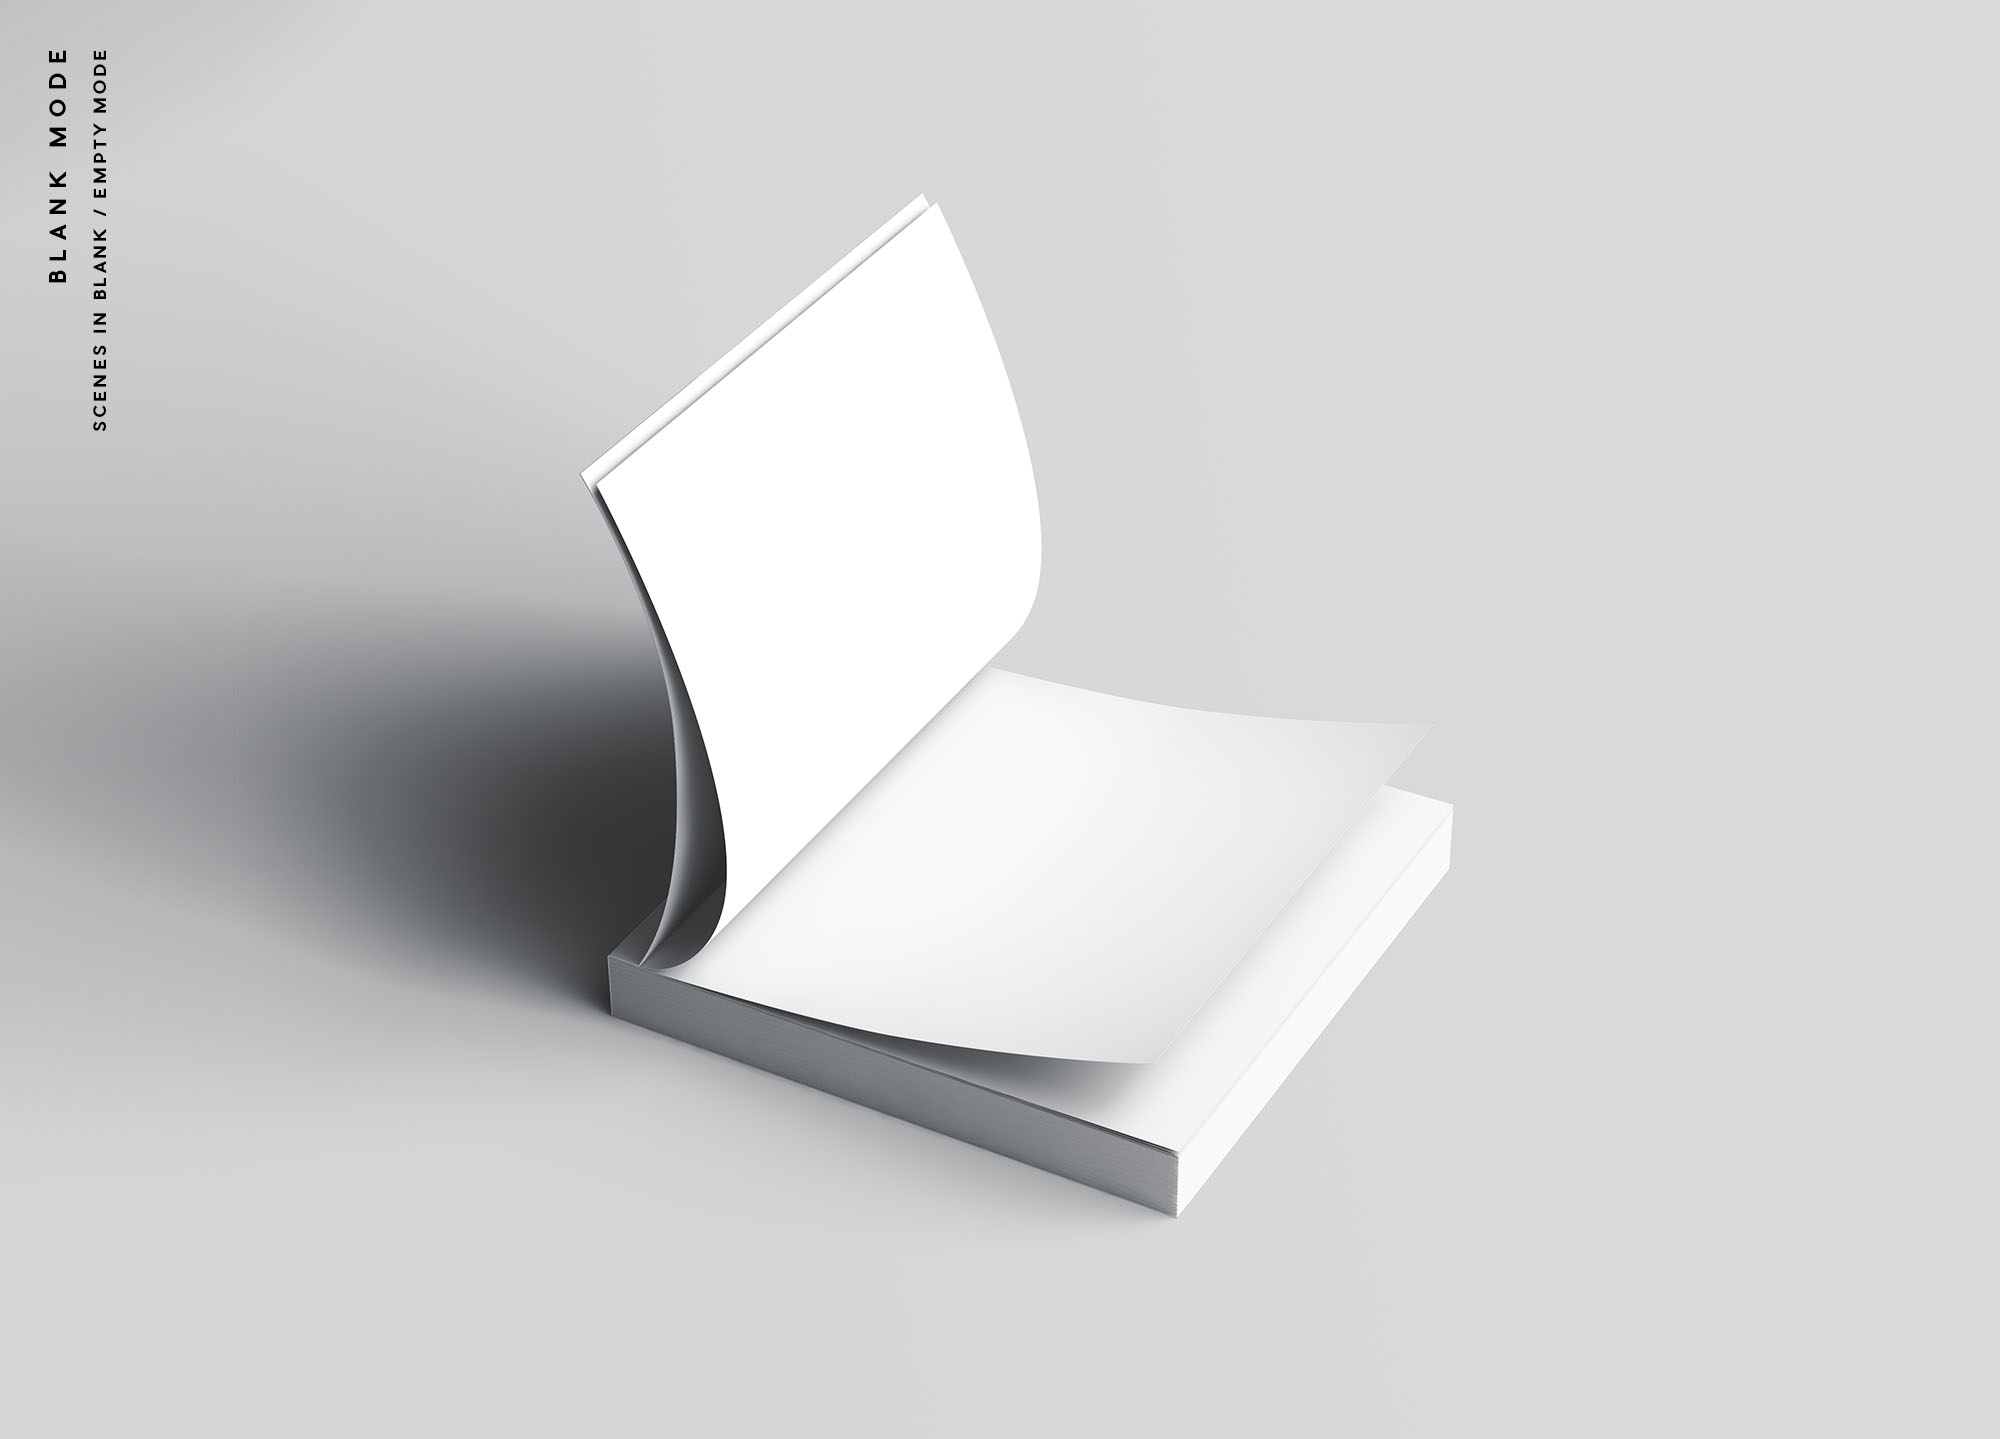 方形软封图书内页版式设计效果图样机蚂蚁素材精选 Square Softcover Book Mockup插图(9)